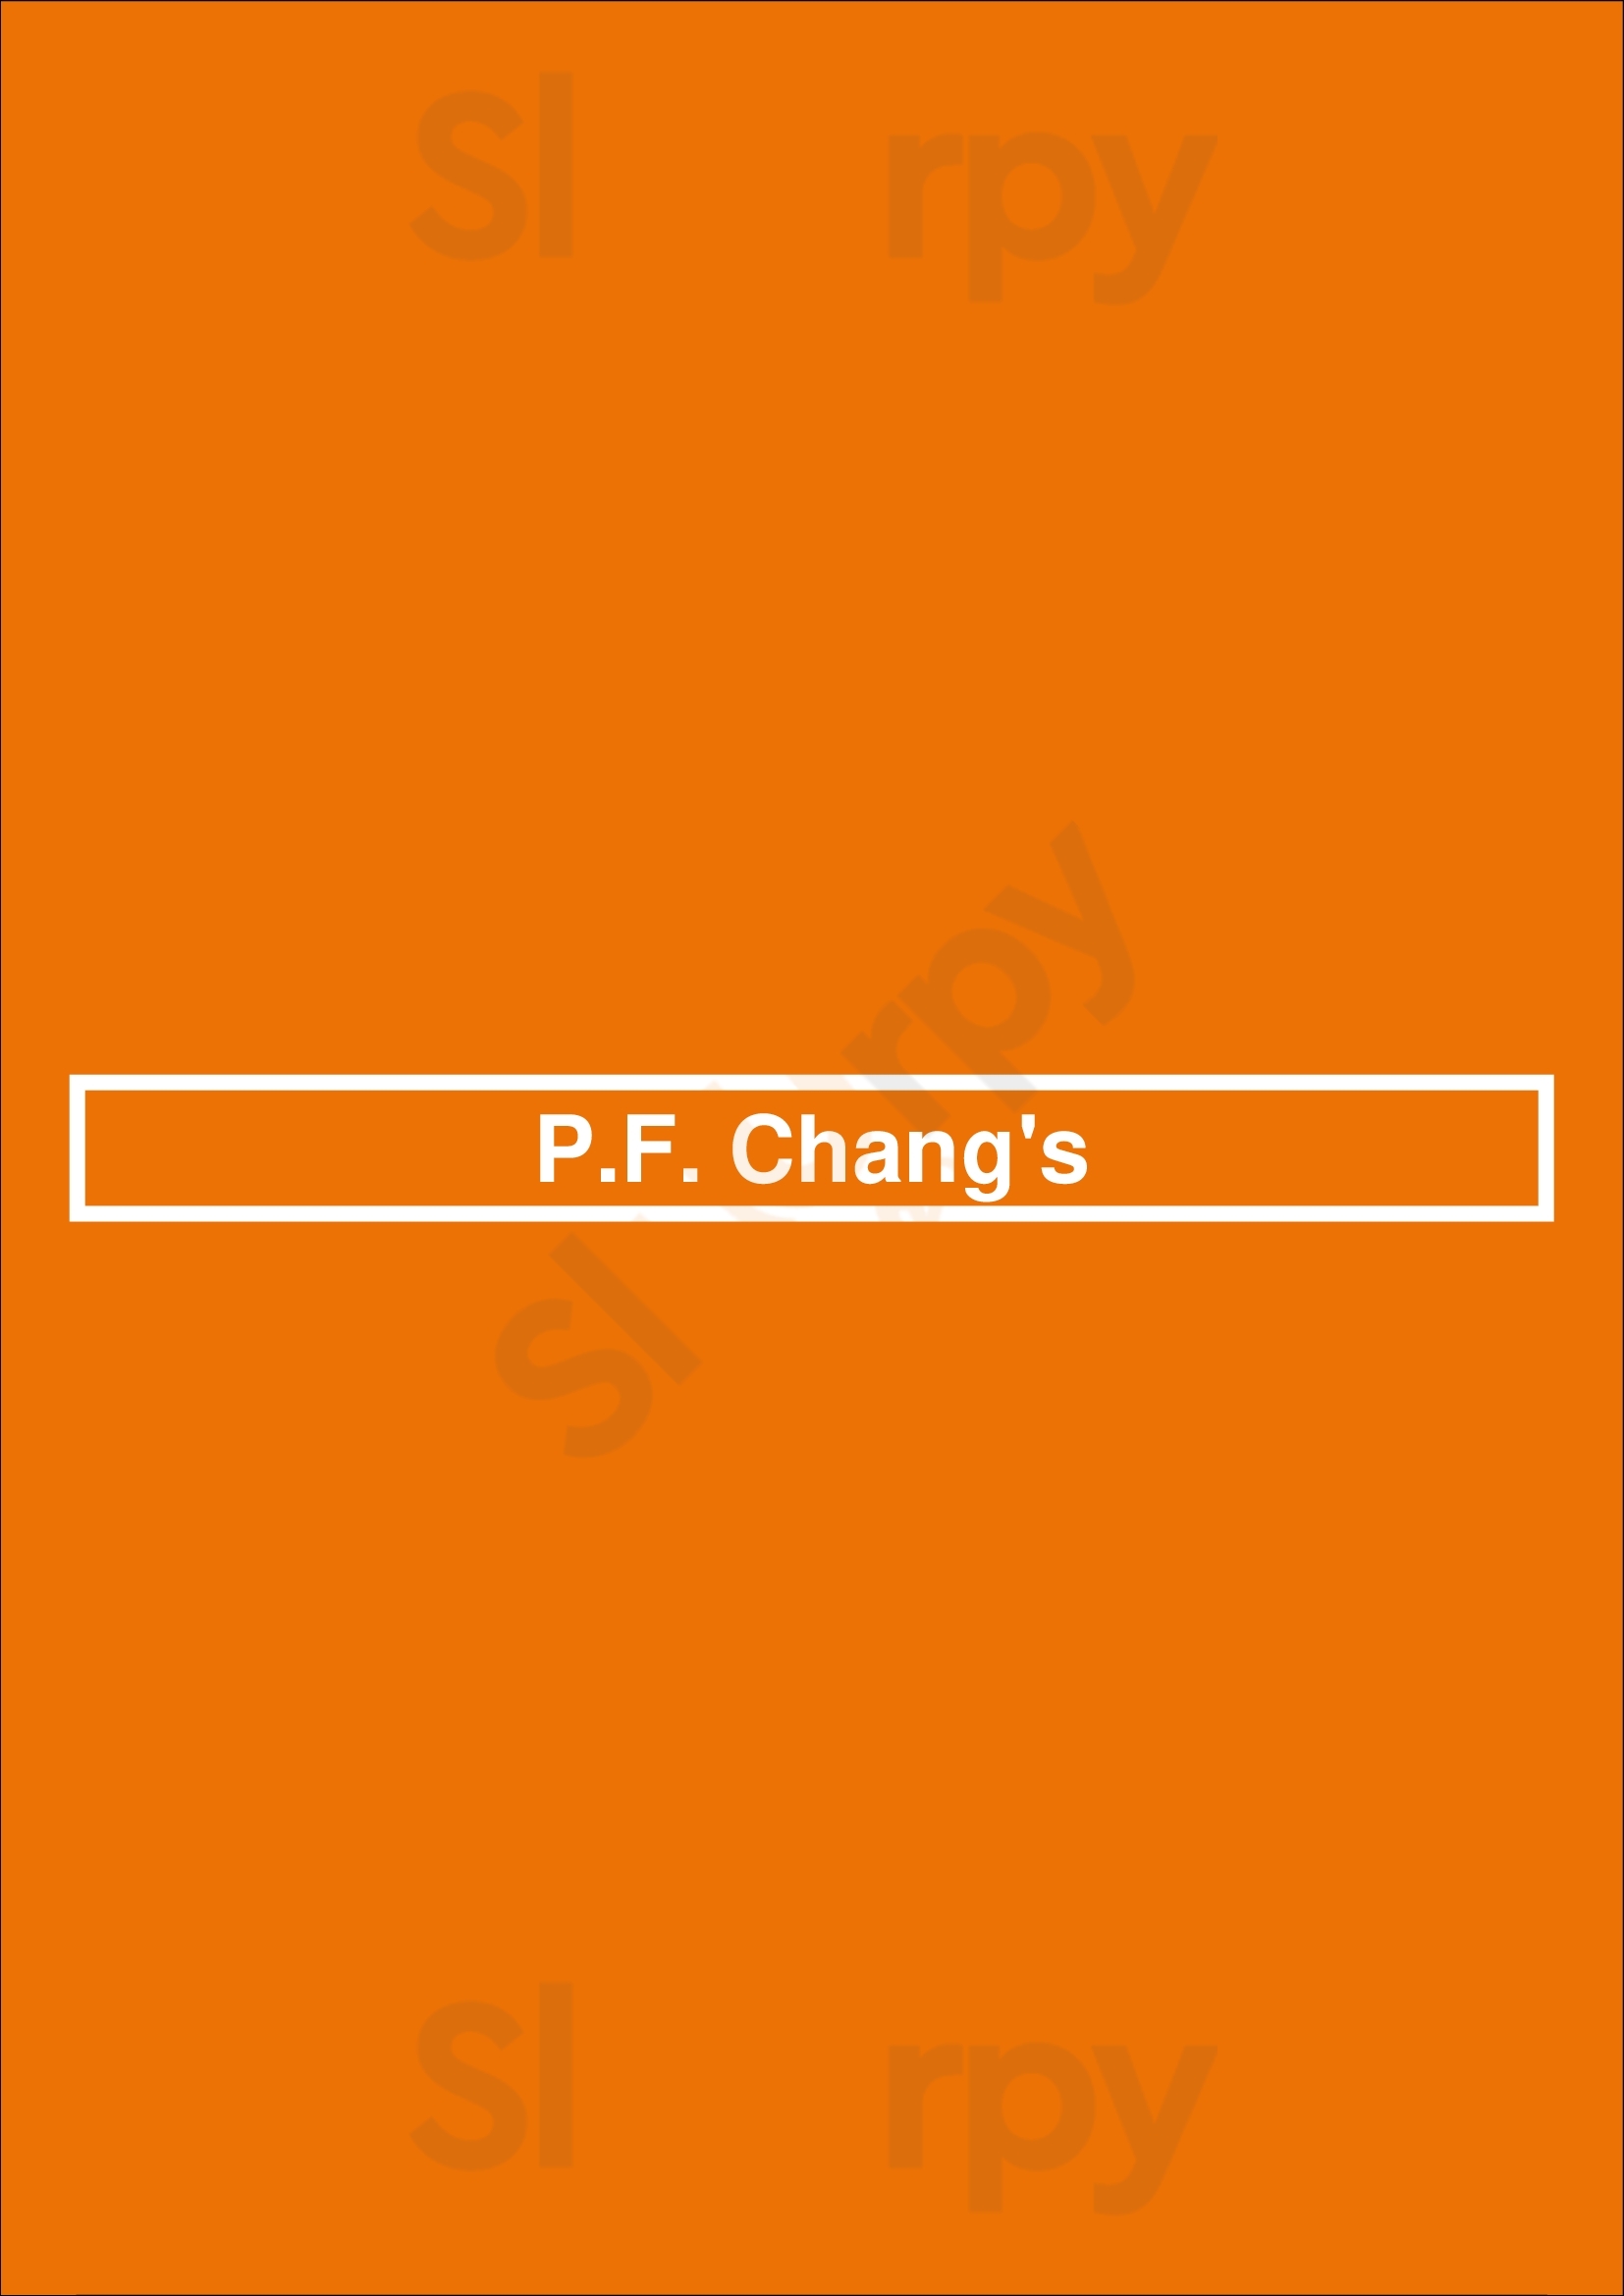 P.f. Chang's Scottsdale Menu - 1